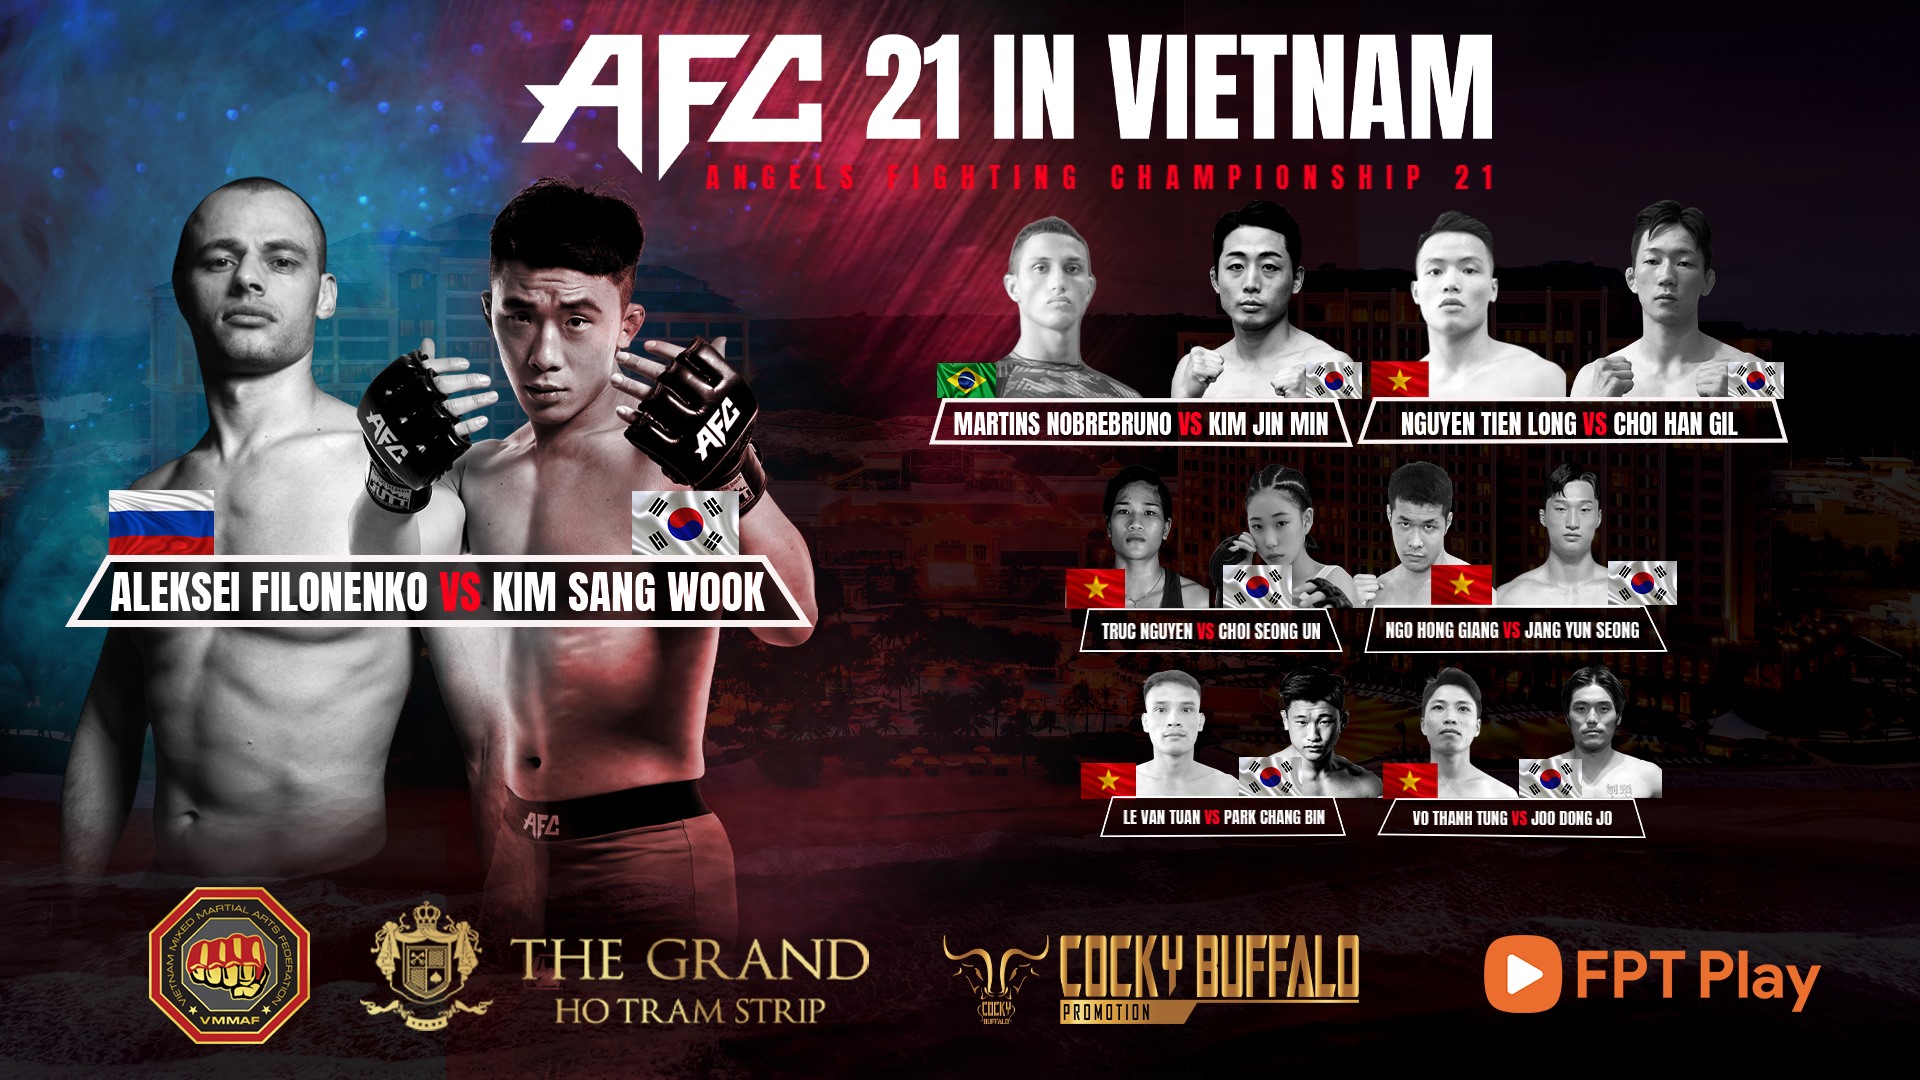 Sự kiện AFC 21 hứa hẹn những trận đấu nảy lửa giữa các võ sĩ MMA của Việt Nam, Hàn Quốc, Brazil và Nga. Ảnh: N.T